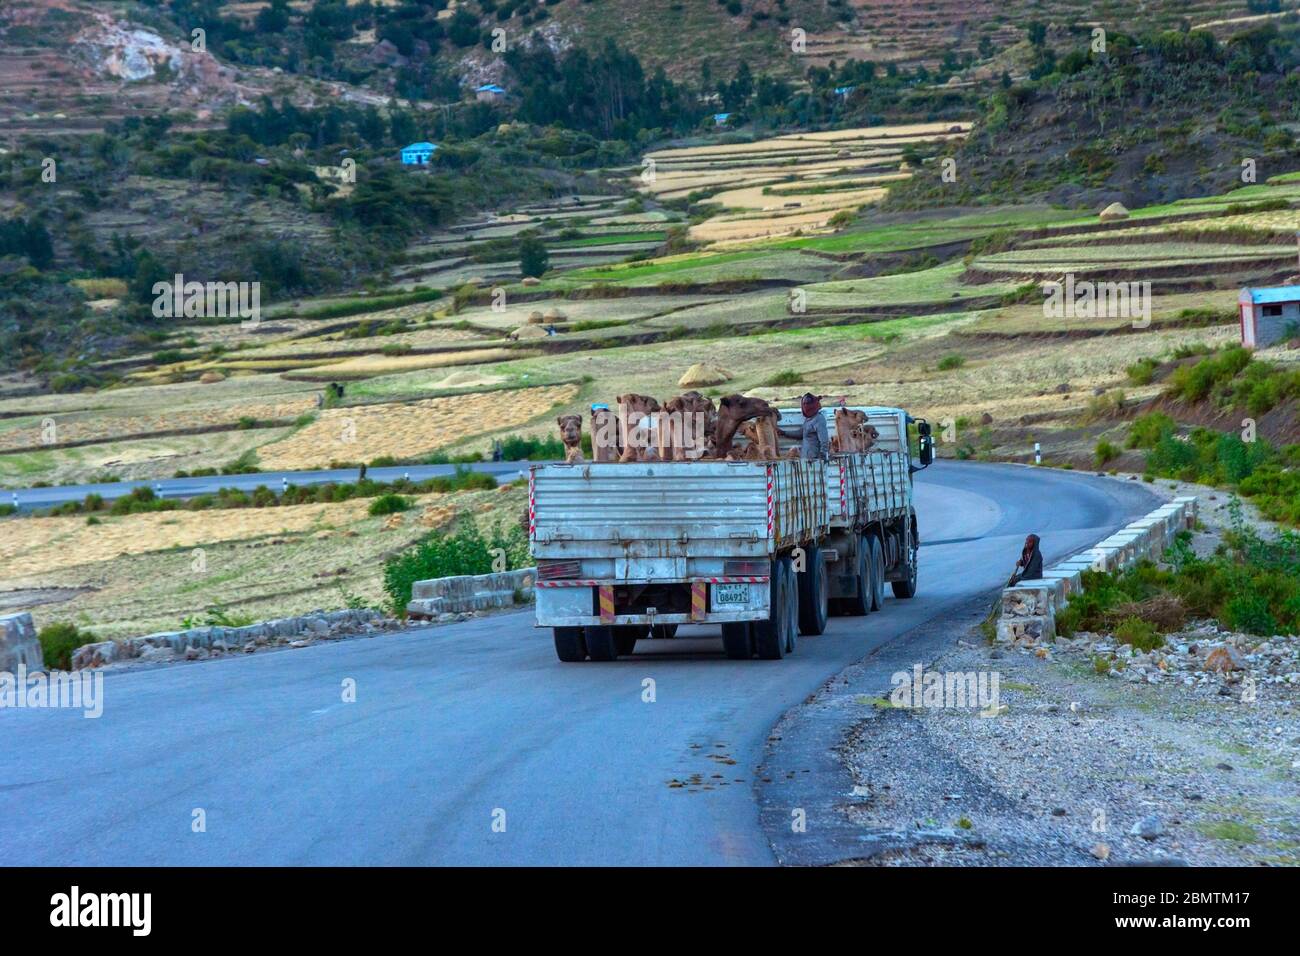 Mekele, Ethiopie - novembre 2018: Camion plein de chameaux à transporter sur la route dans la campagne éthiopienne Banque D'Images